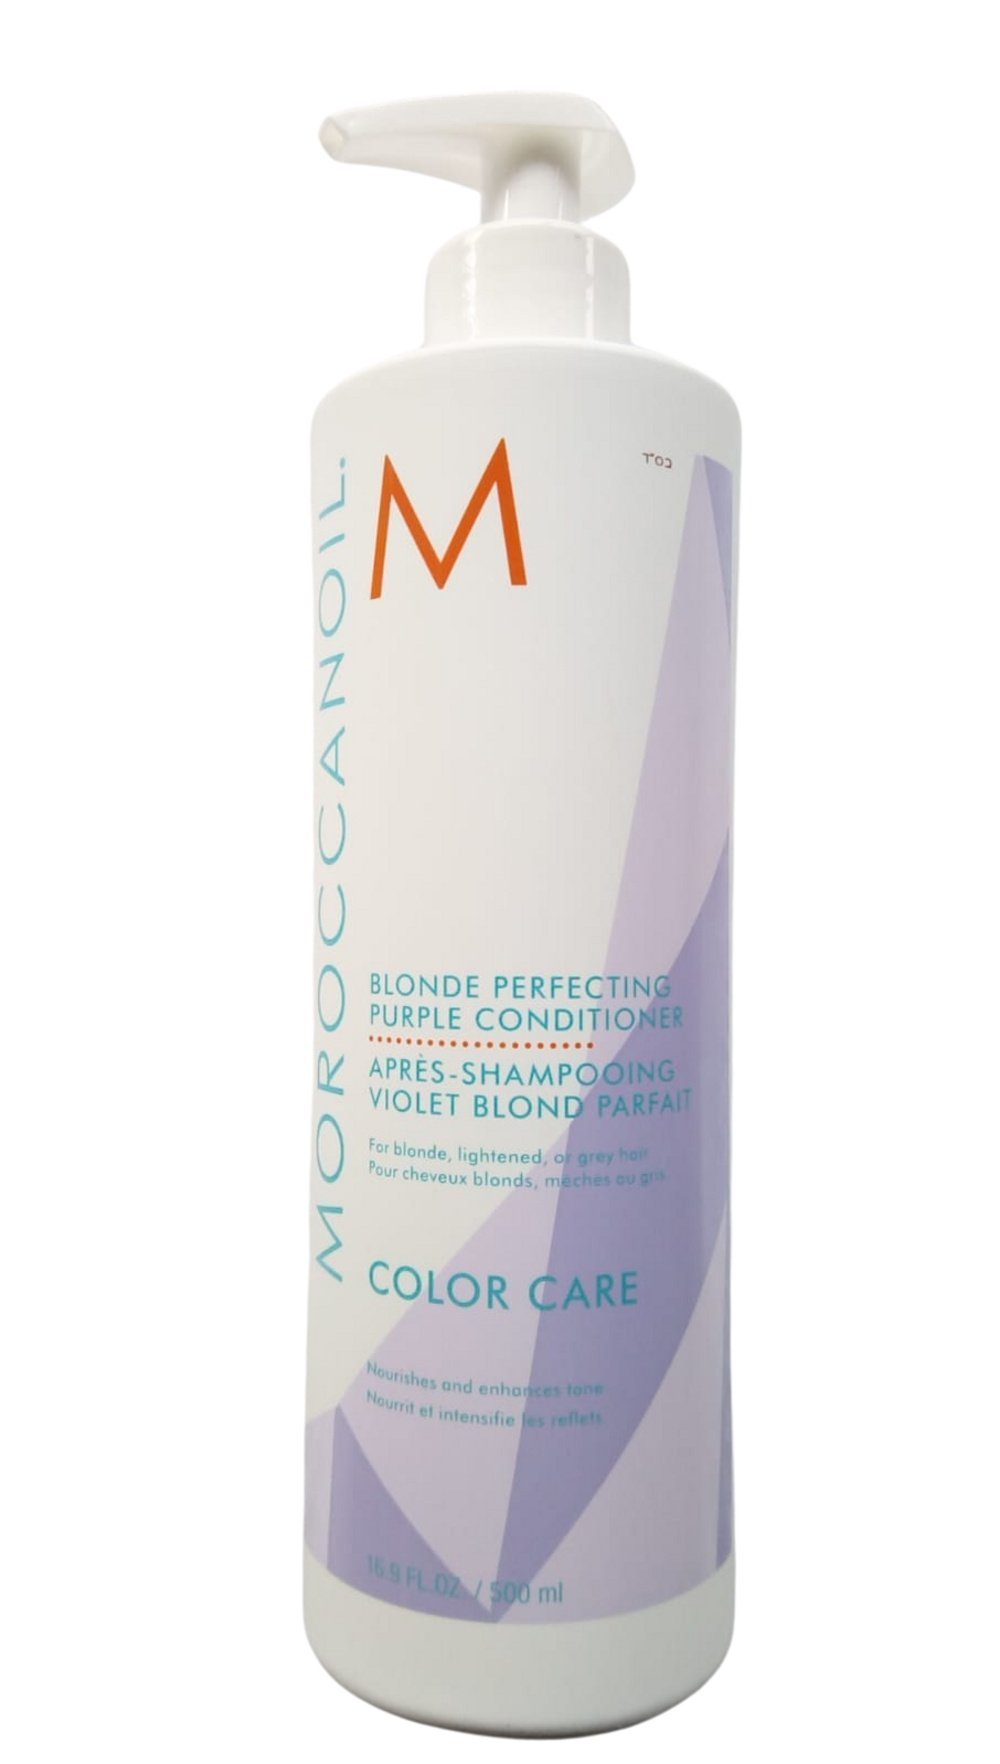 moroccanoil Haarspülung Blonde Perfecting Purple Conditioner, -, 1-tlg., -, für blonde, aufgehellte, graue Haare, neutralisierend